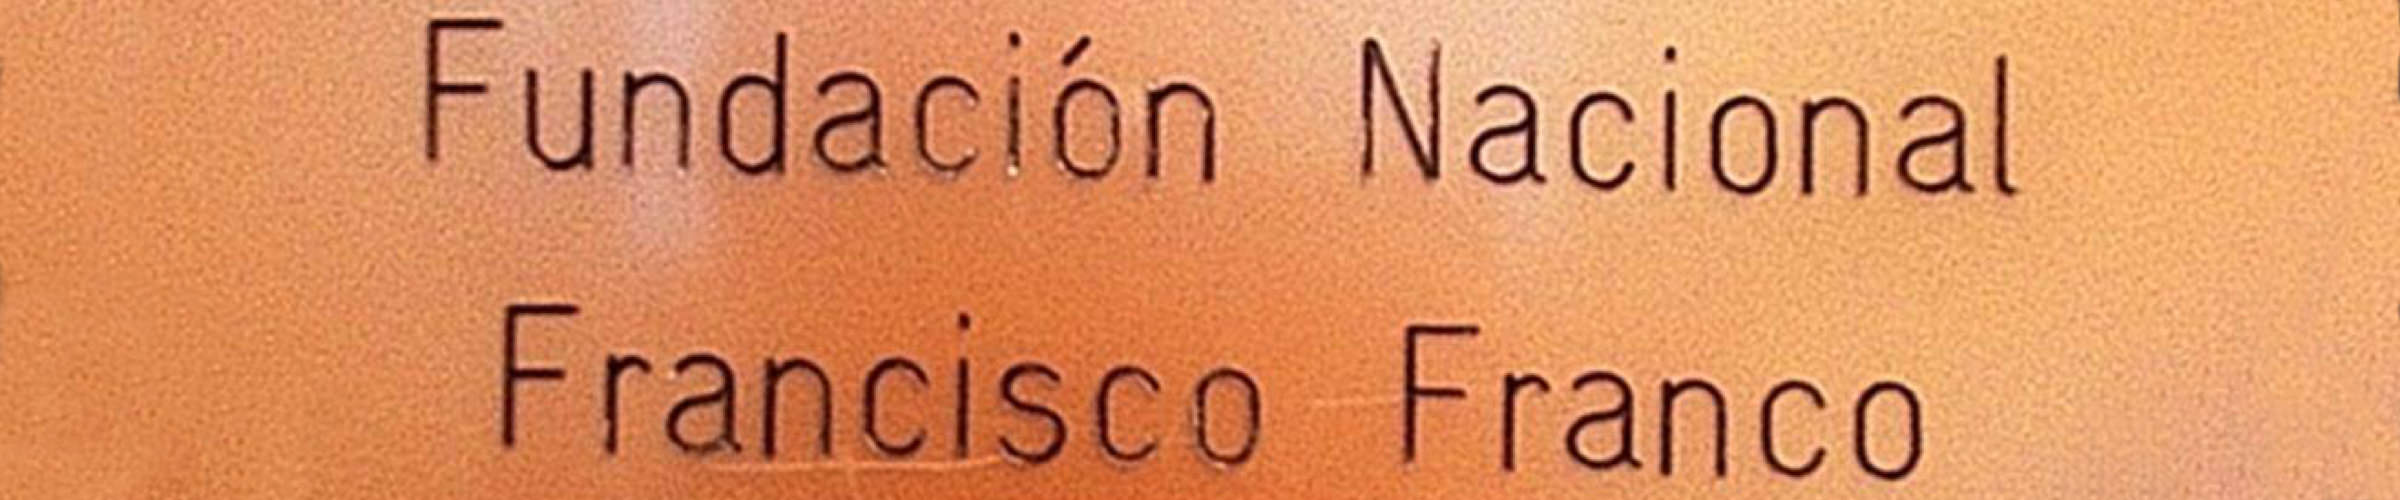 Libertad de pensamiento: La Fundación Nacional Francisco Franco se blinda y evita su ilegalización